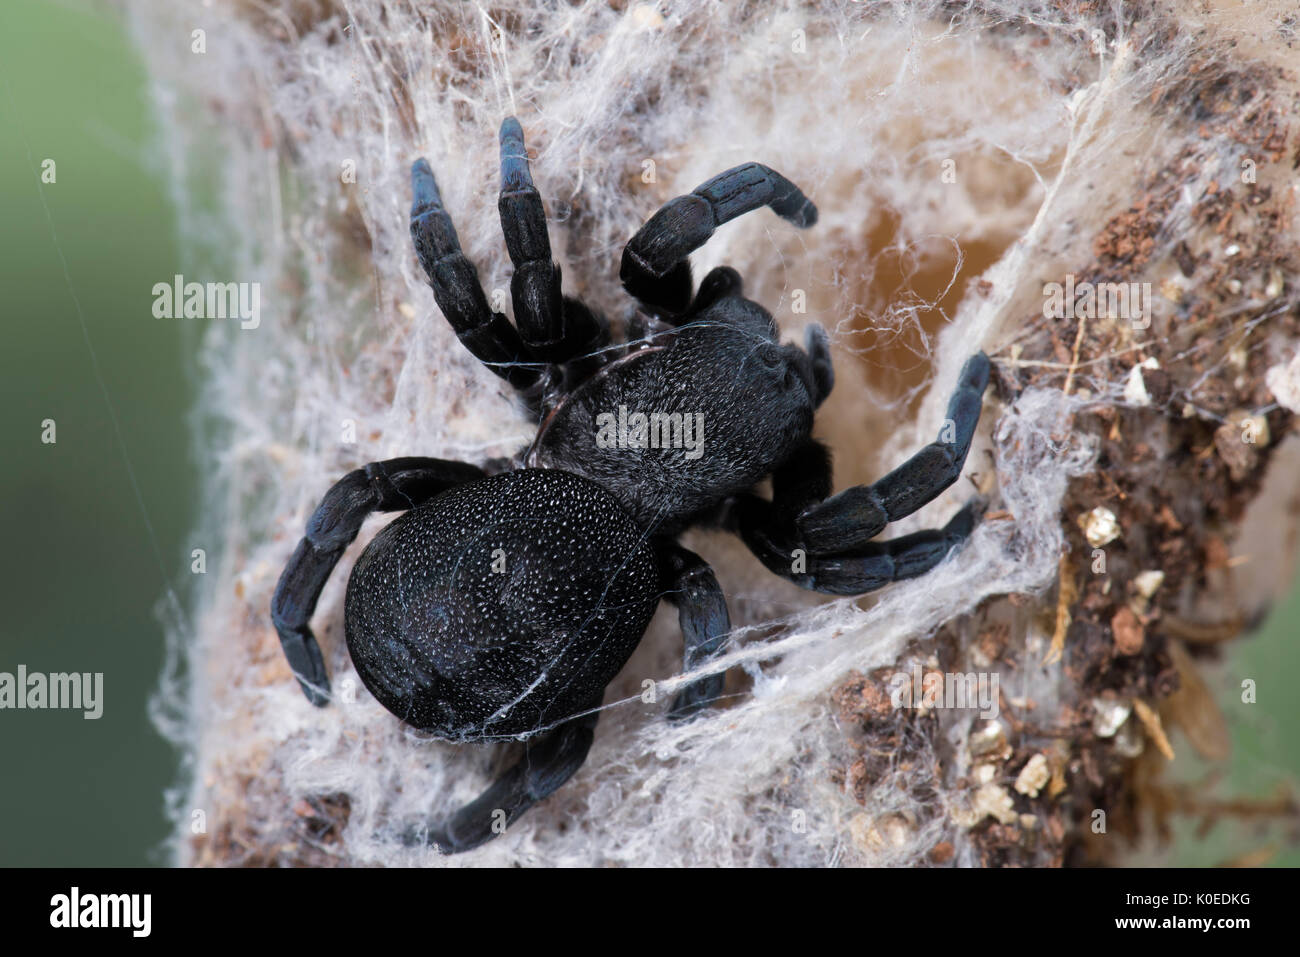 Ladybird Spider, Female, Eresus walckenaeri, on web, Eastern Mediterranean Stock Photo